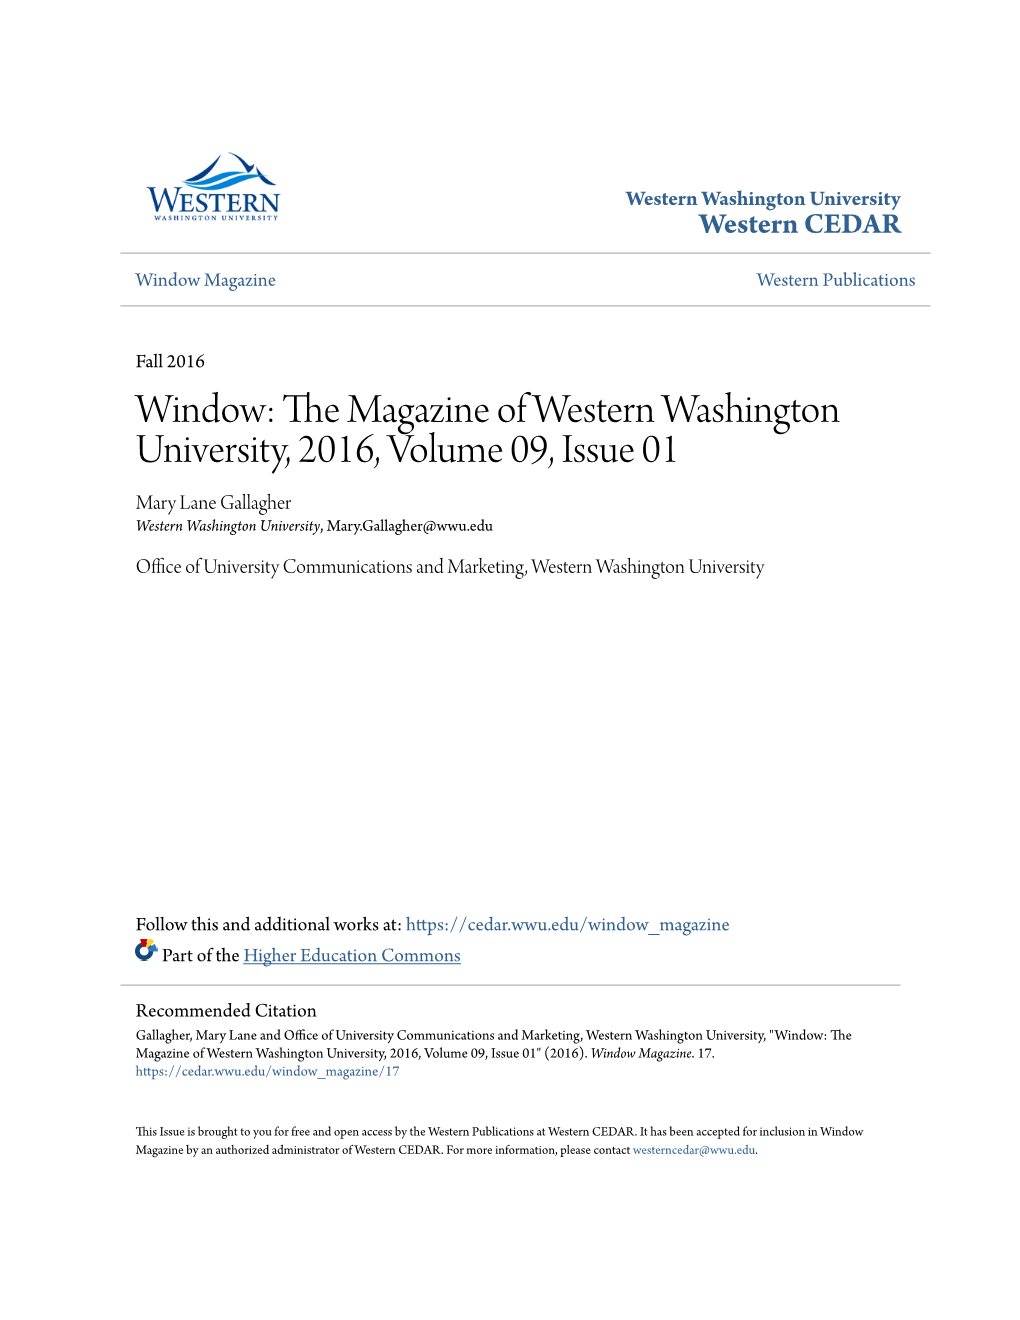 Window: the Magazine of Western Washington University, 2016, Volume 09, Issue 01" (2016)